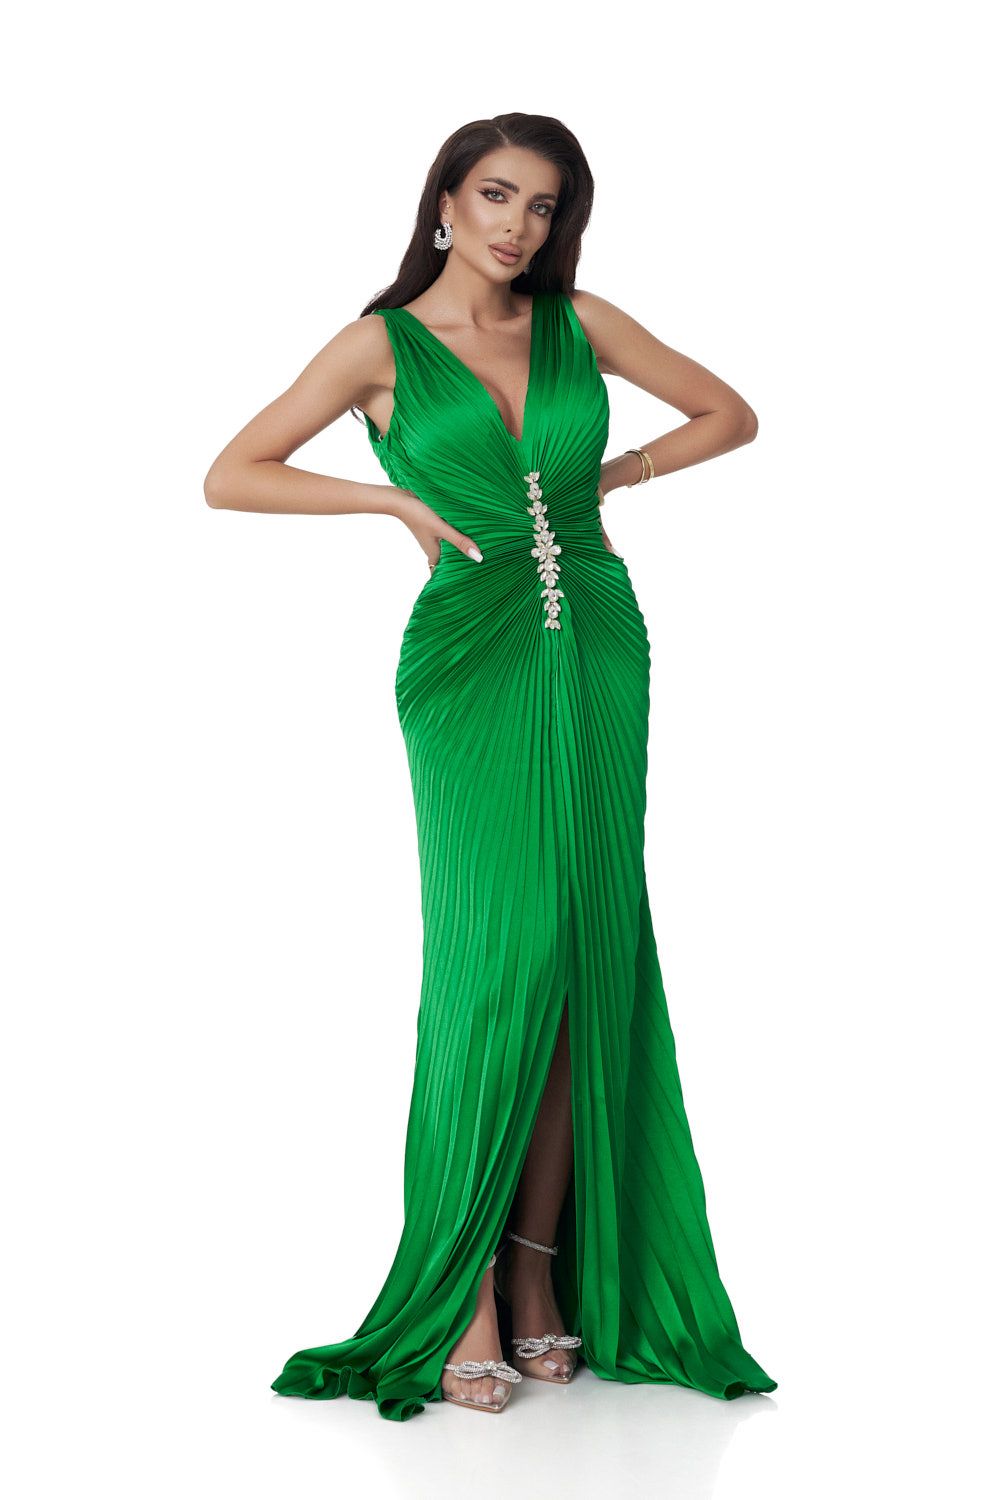 Long green satin veil dress for women Omana Bogas